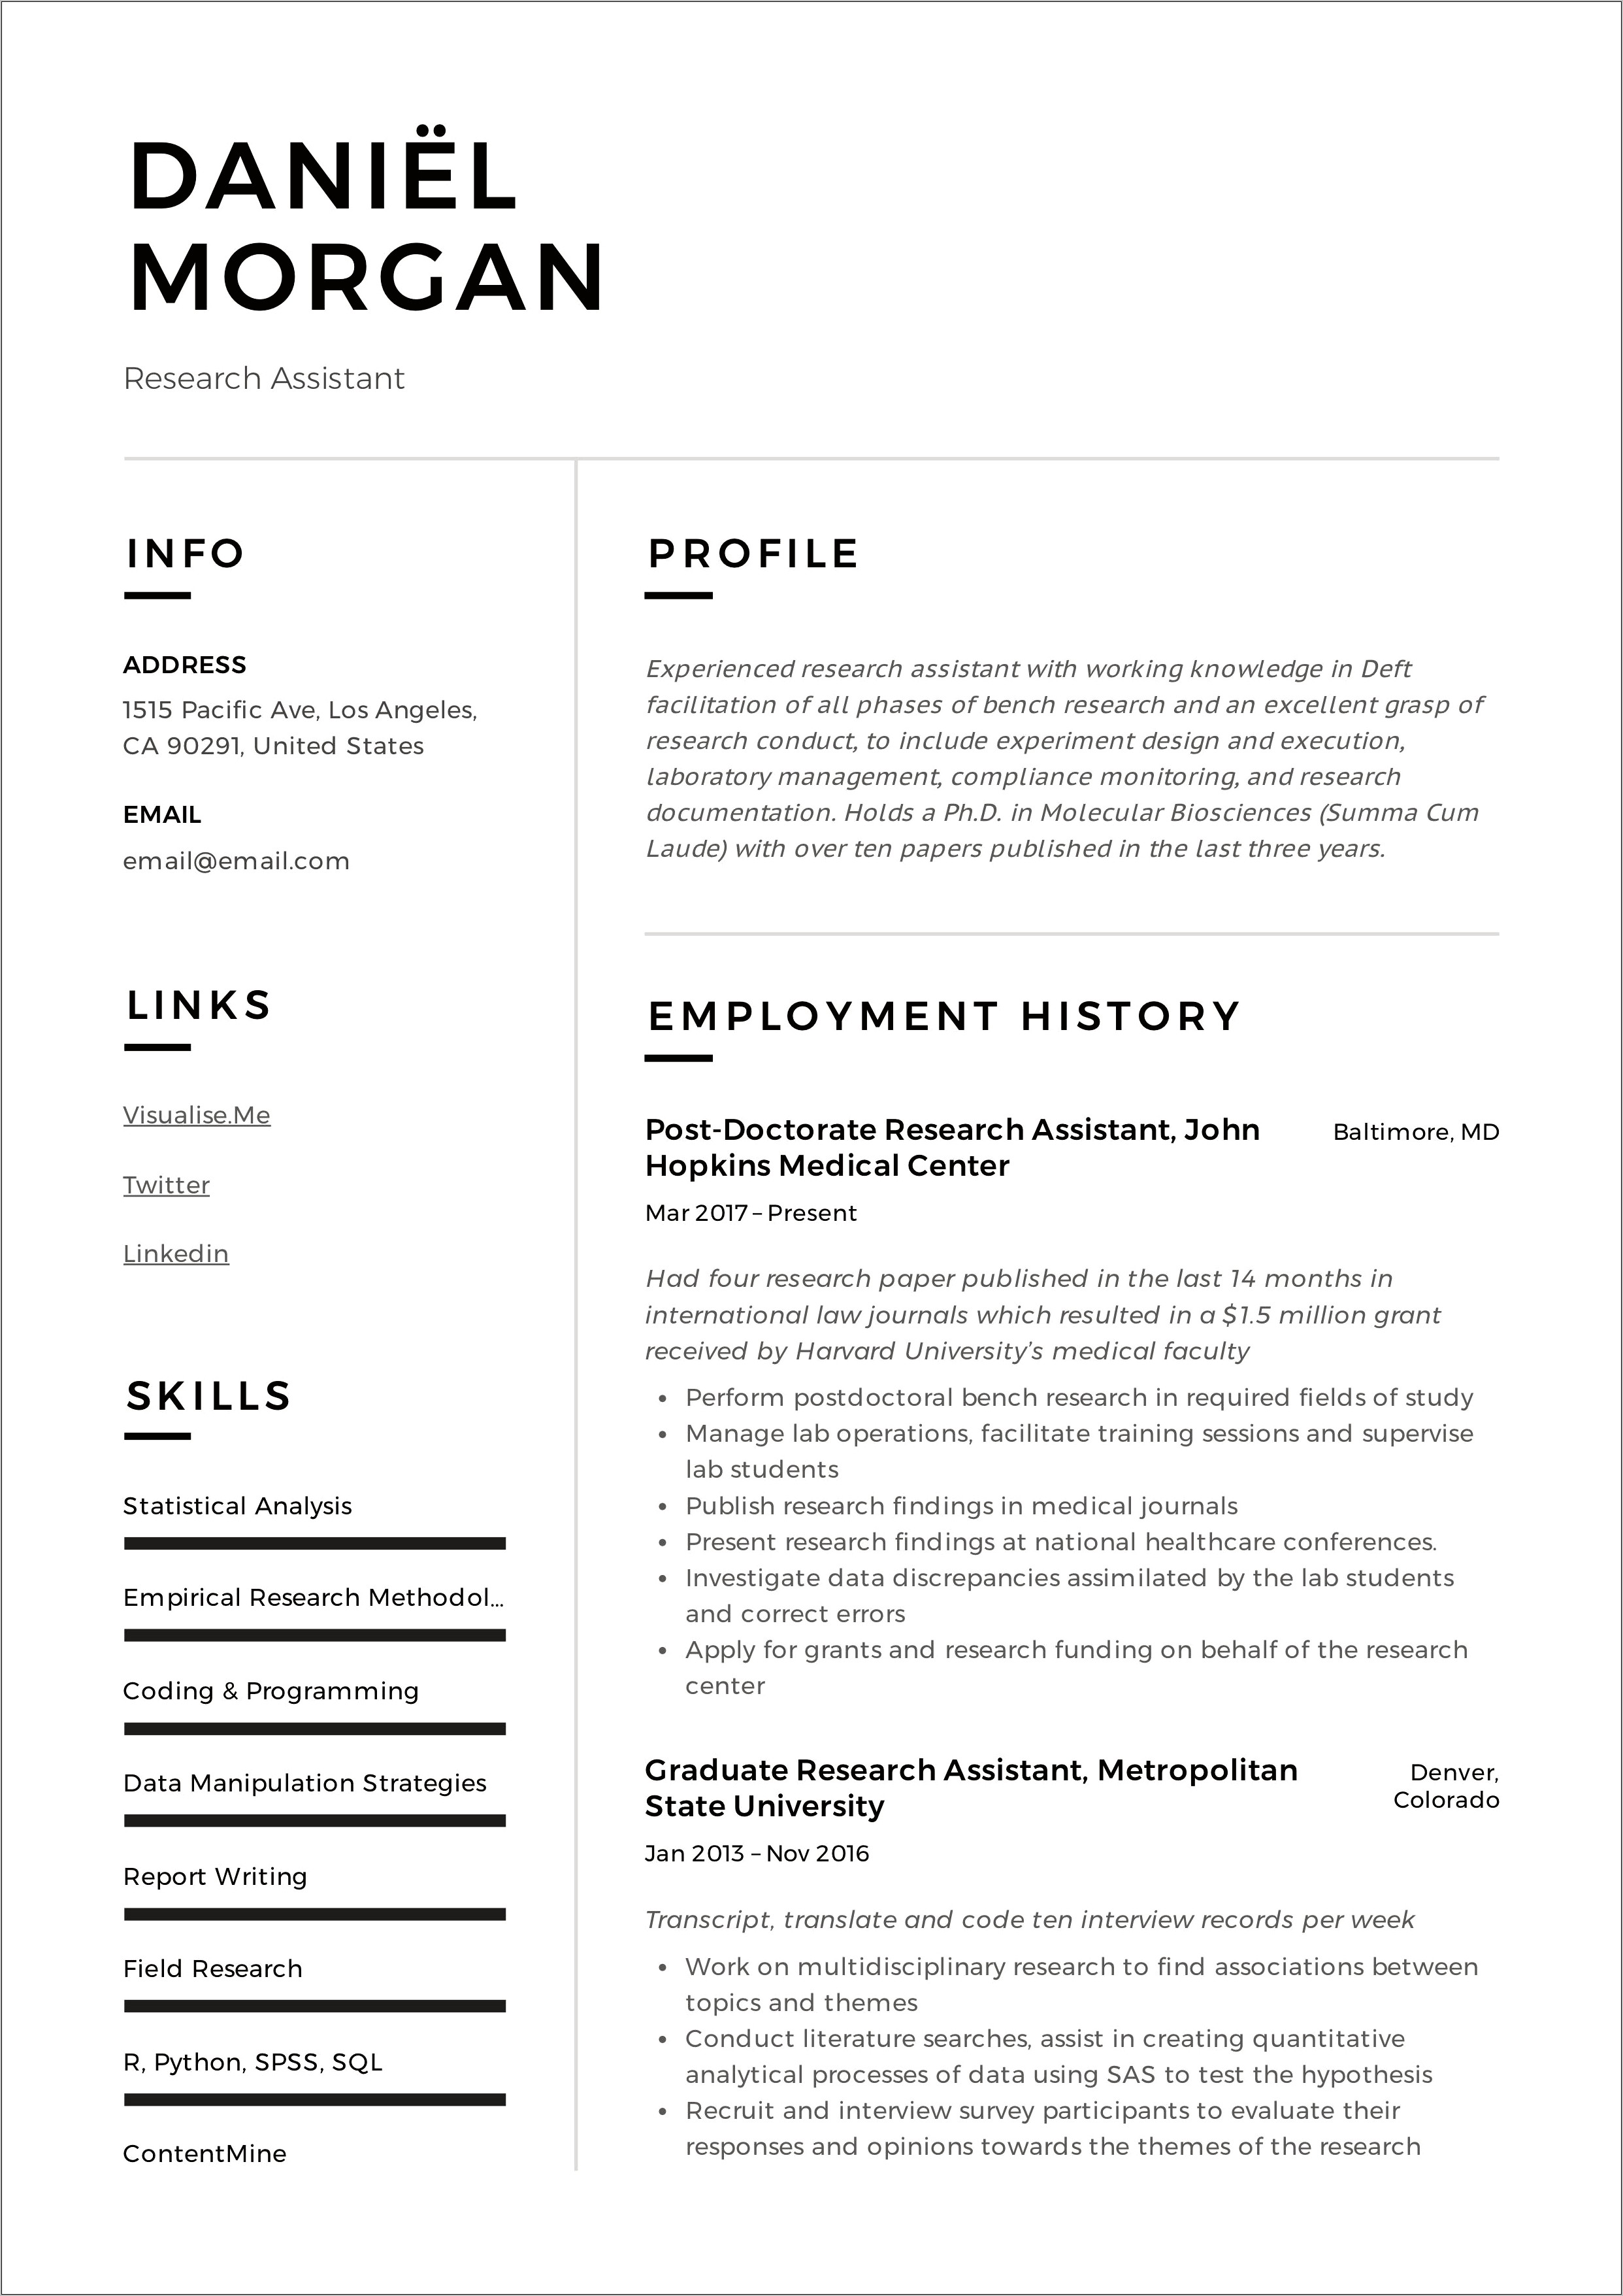 Research Assistant Poultry Job Description For Resume